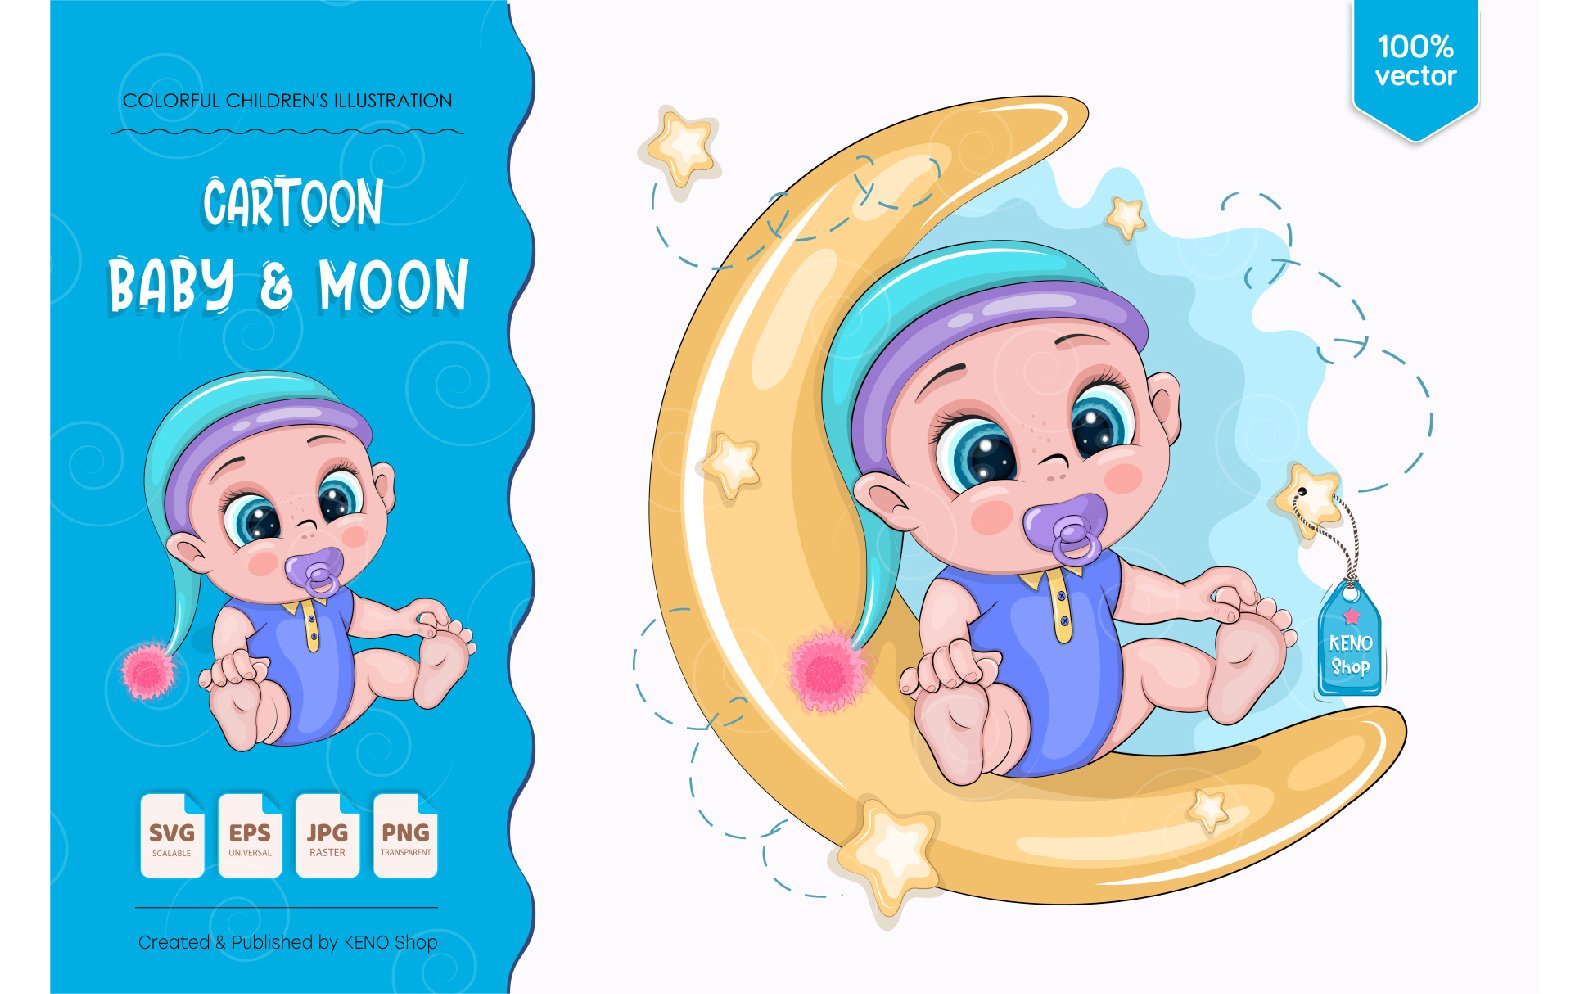 Cartoon Baby on Moon - Vector Image